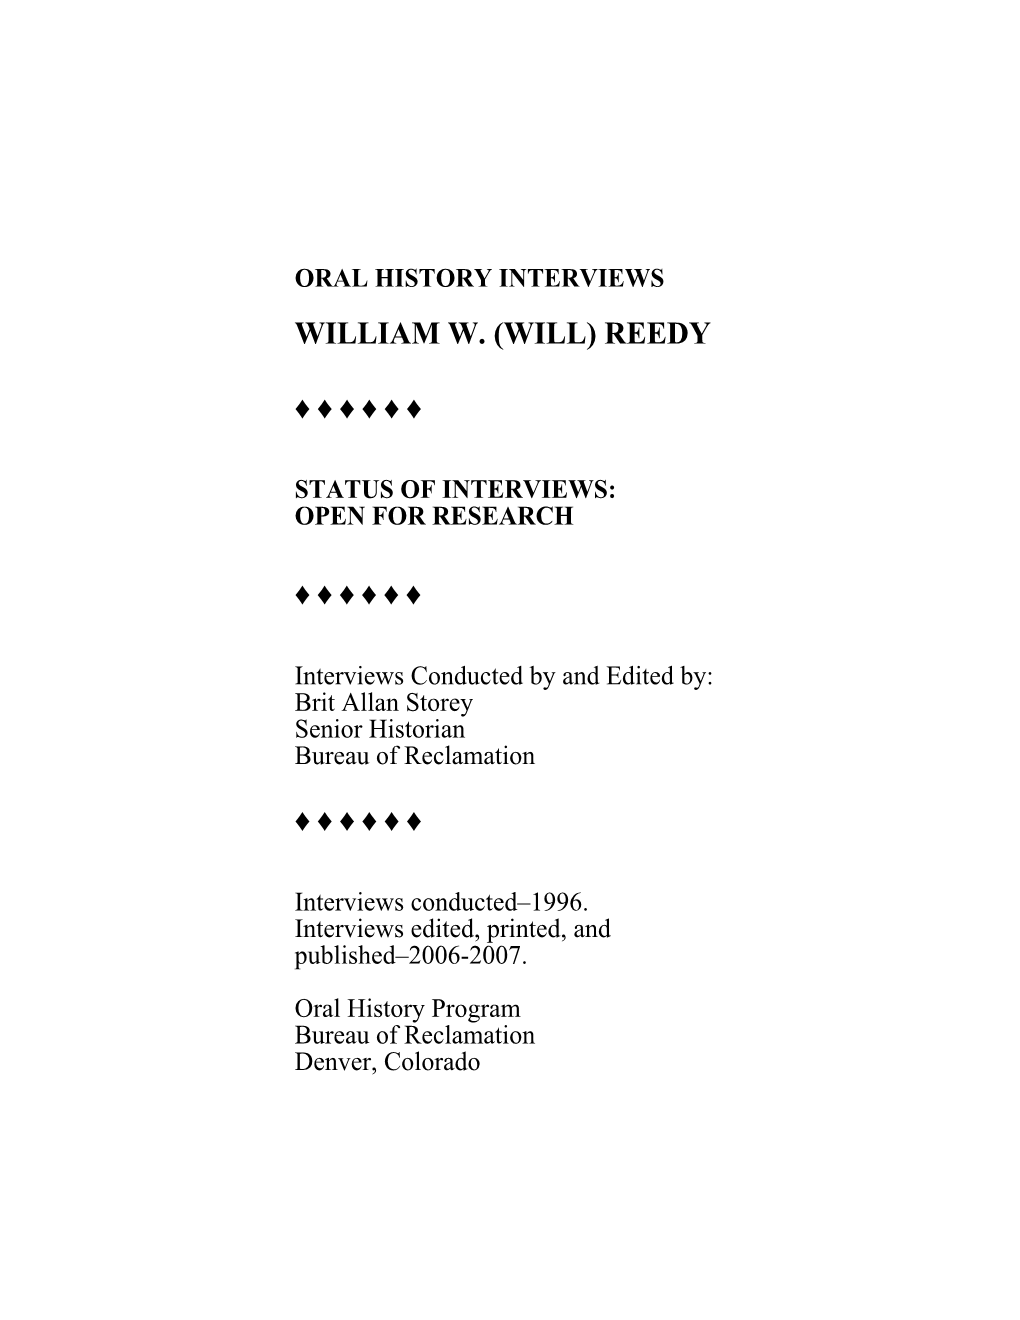 Reedy, William W